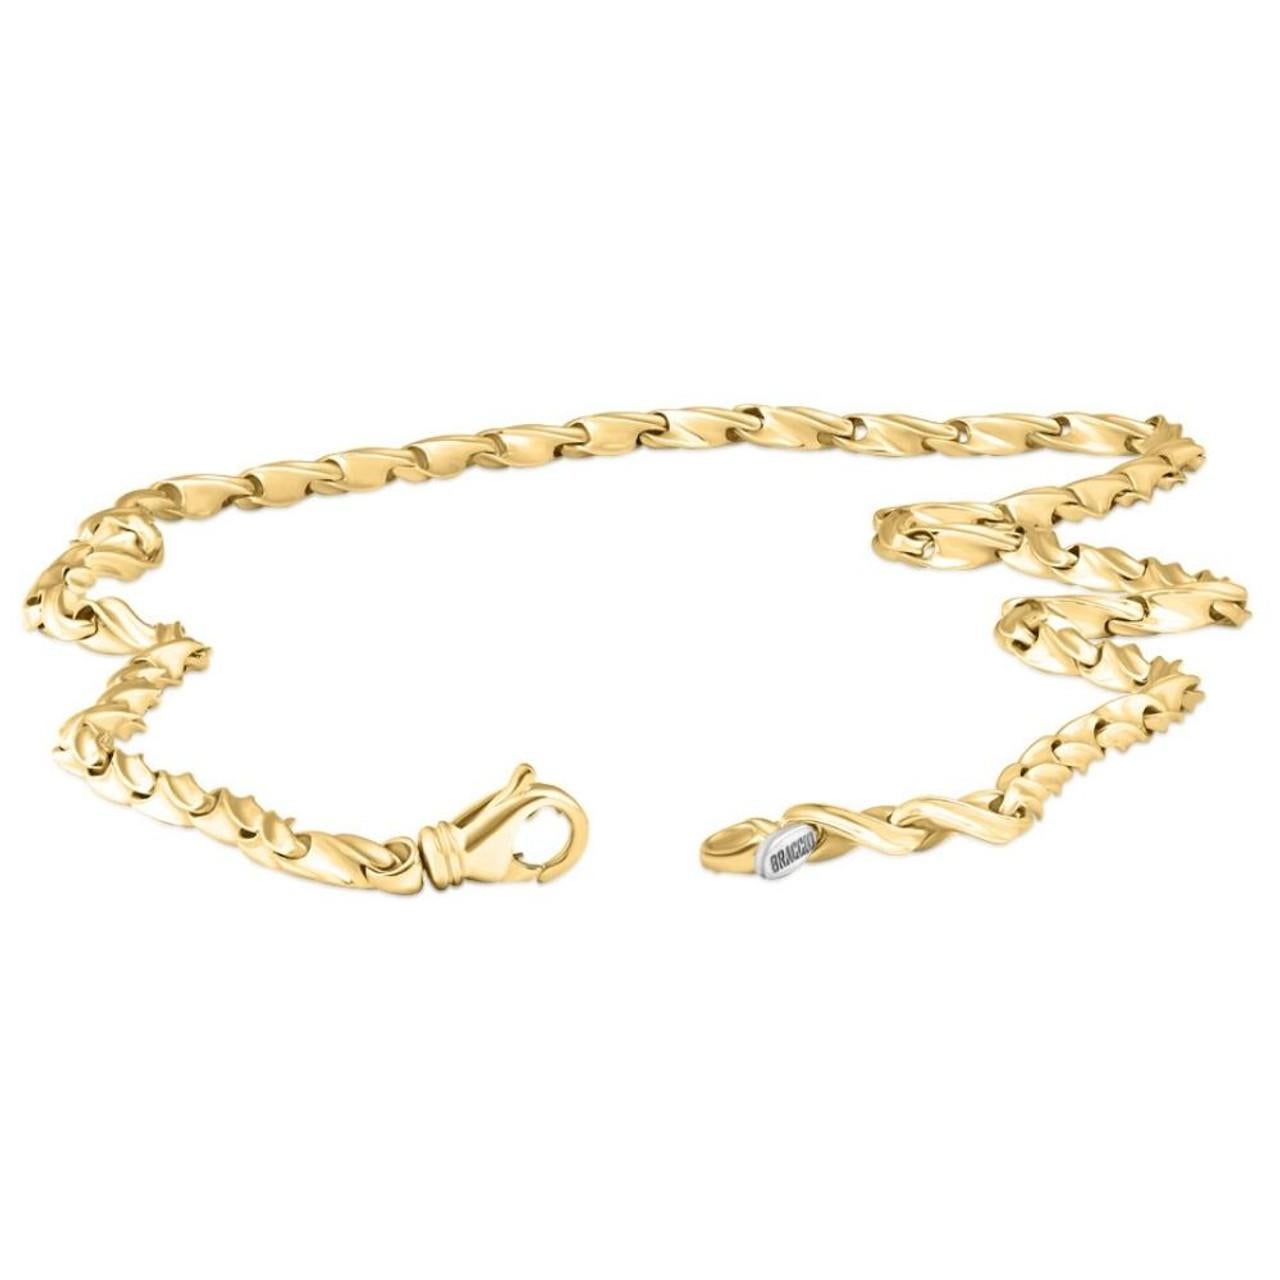 Art Deco Braccio Solid 14k Yellow Gold Men's Chain Necklace 50.9 Grams For Sale